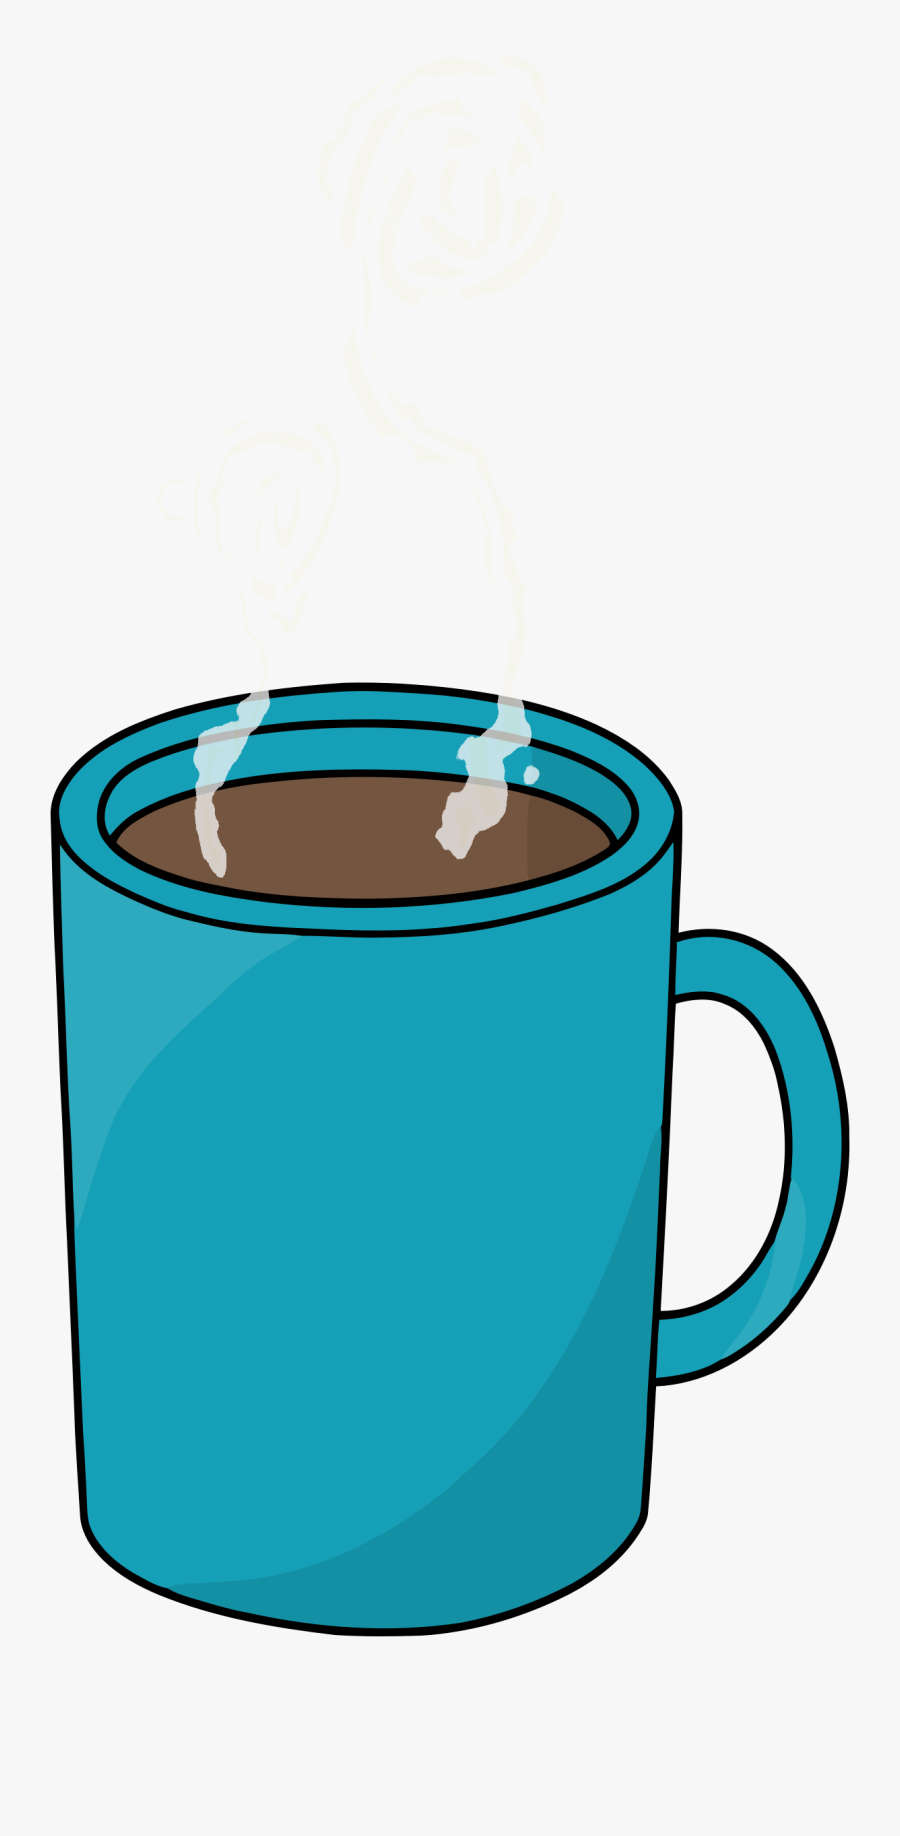 Transparent Mug Clipart - Mug Of Coffee Clipart, Transparent Clipart